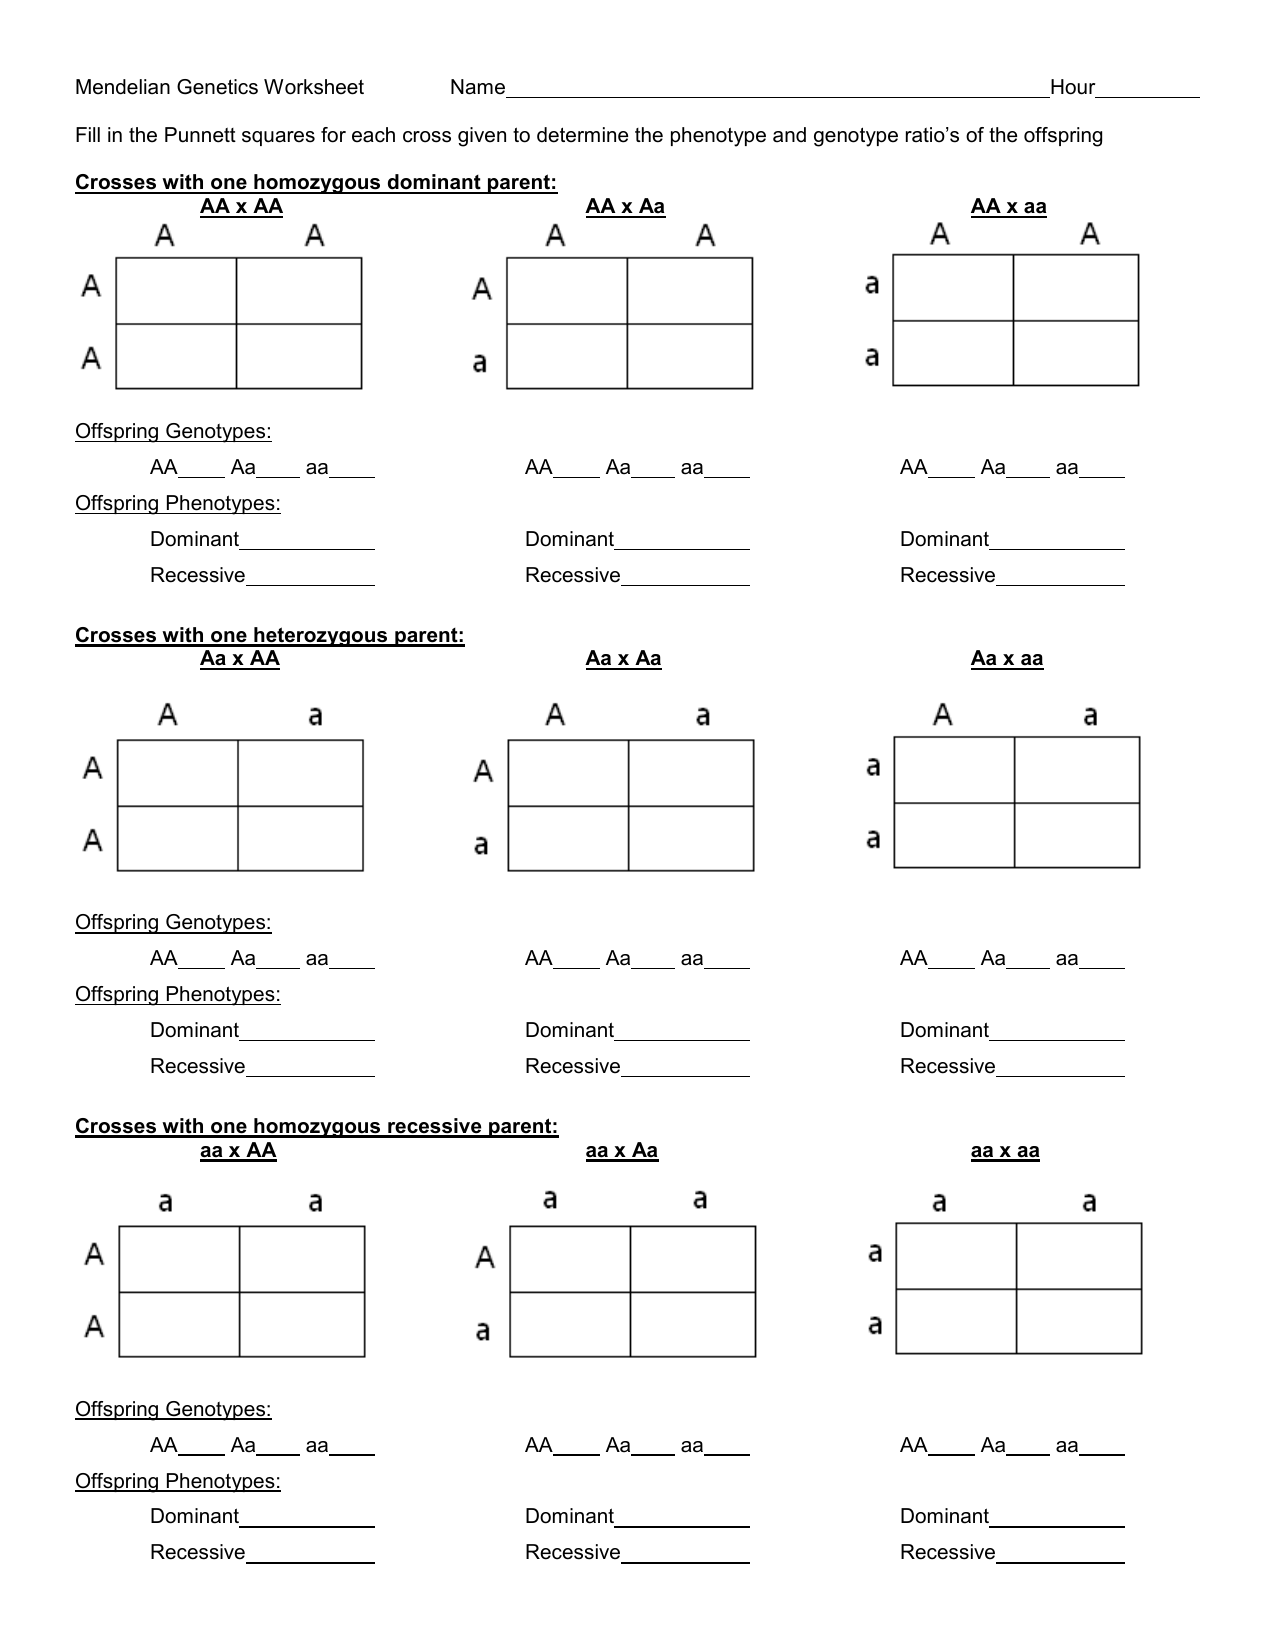 dihybrid-punnett-square-worksheet-dihybrid-punnett-square-practice-worksheet-answer-key